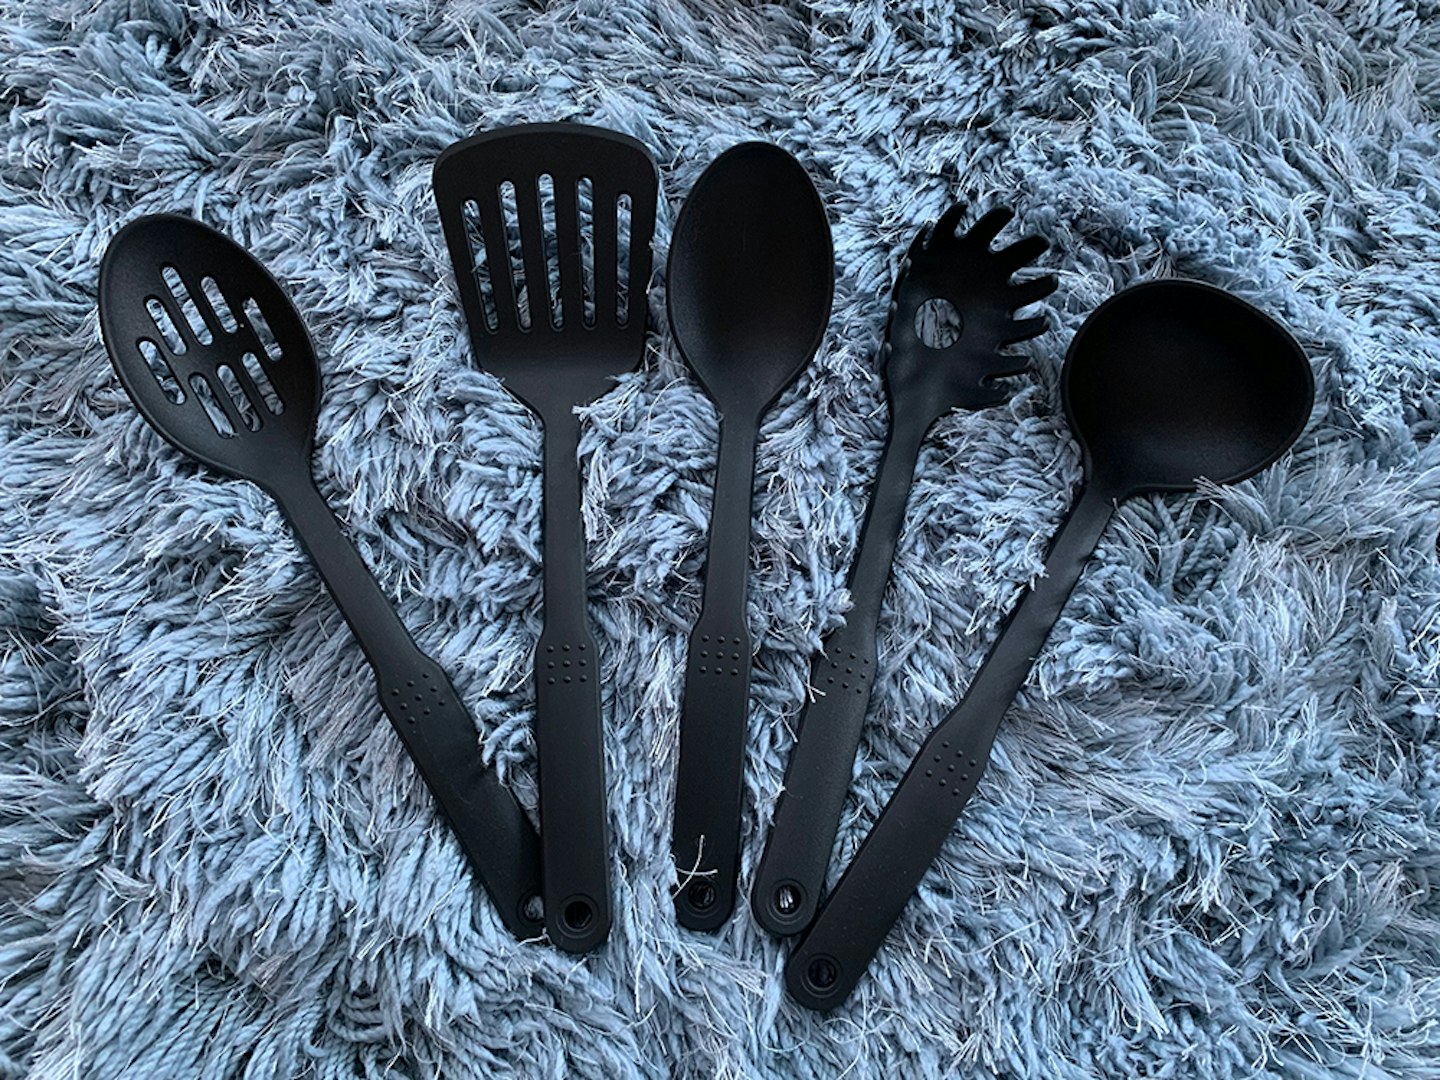 Amazon Basics utensils